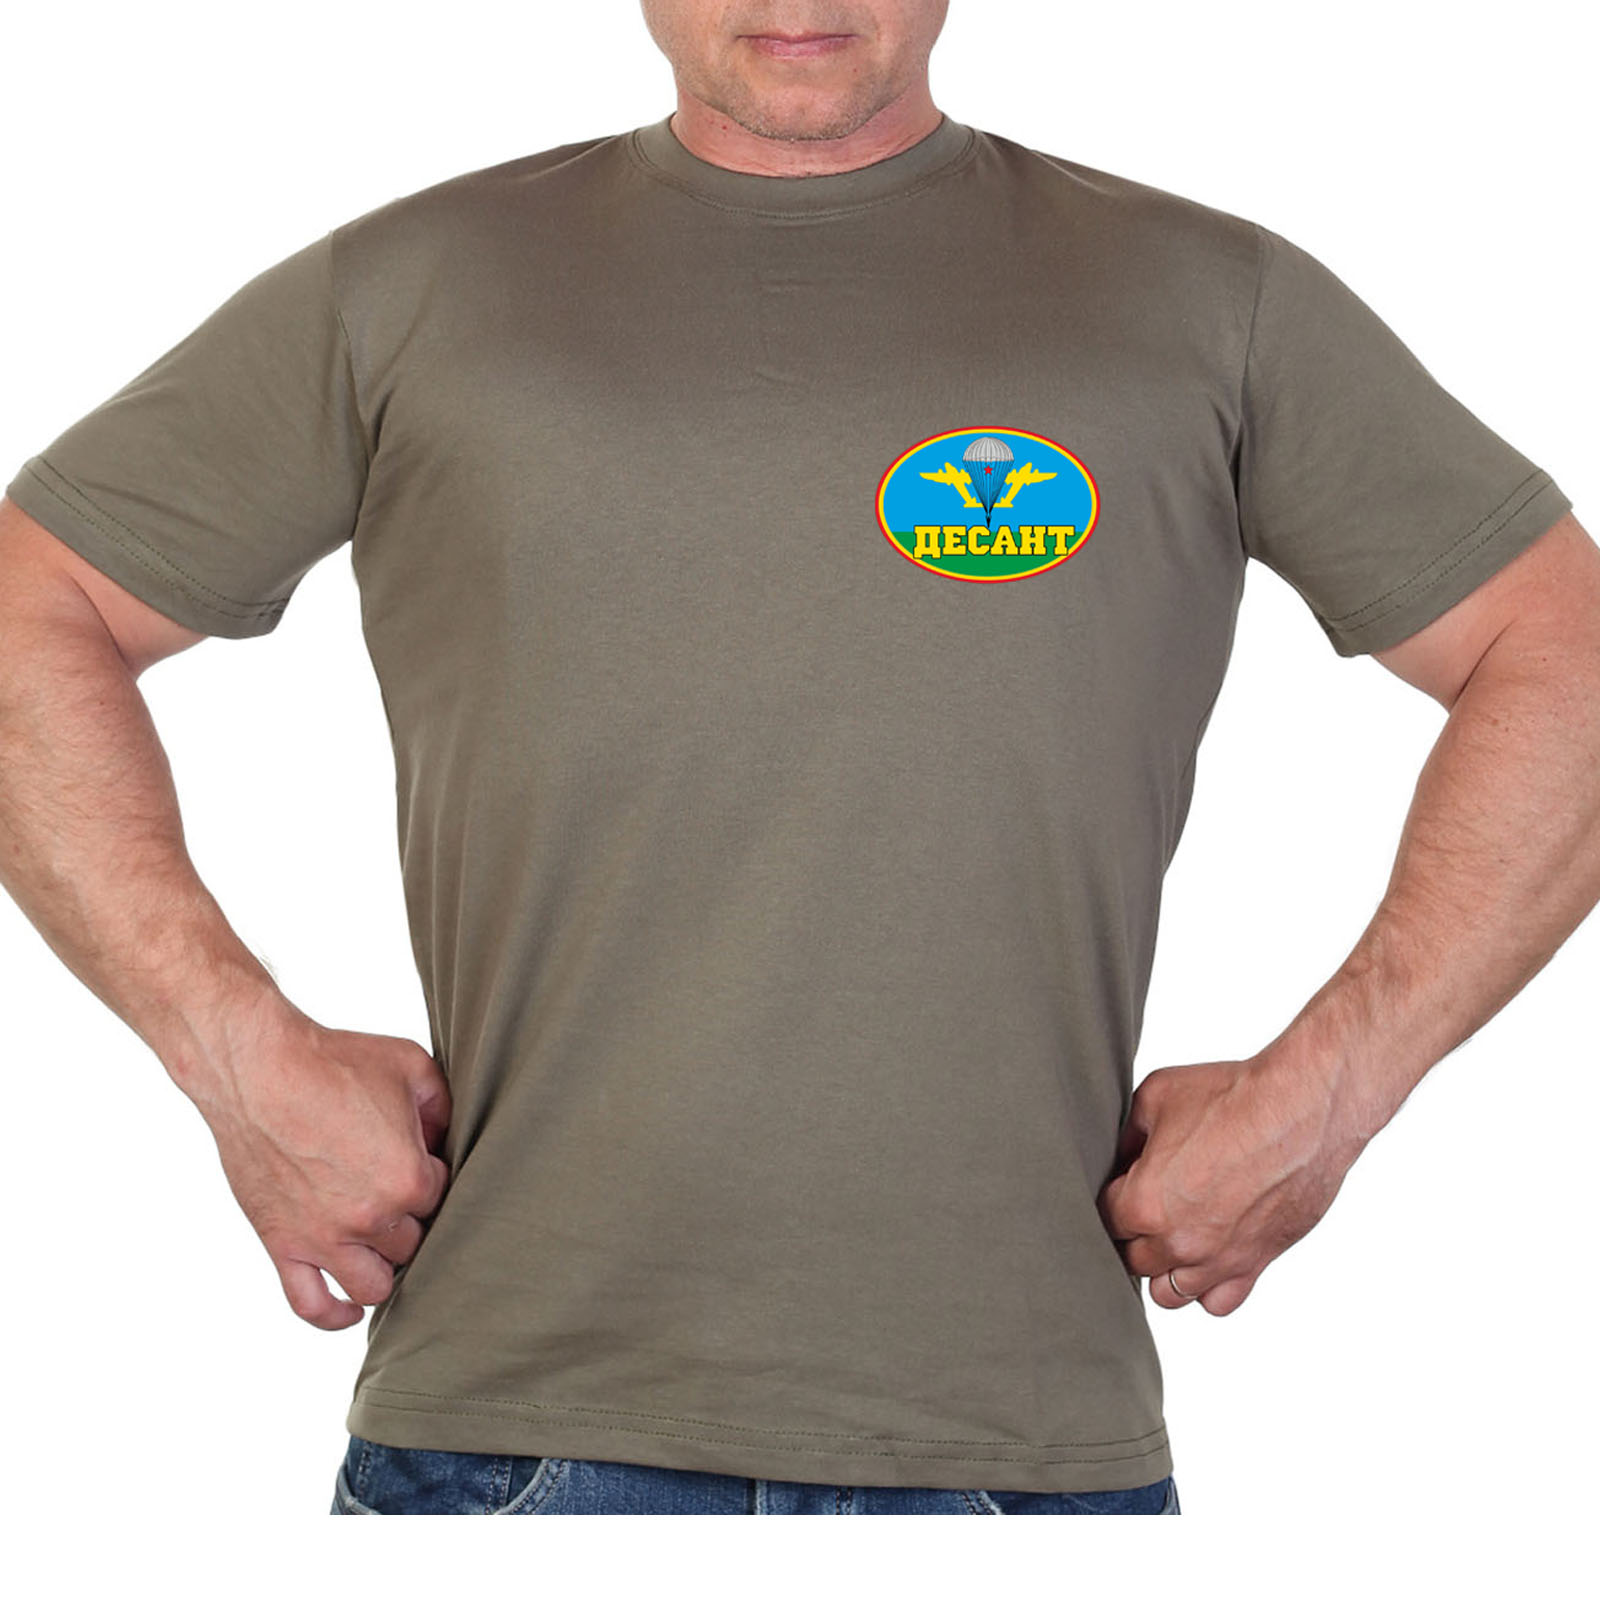 Оливковая футболка с термотрансфером "Десант"